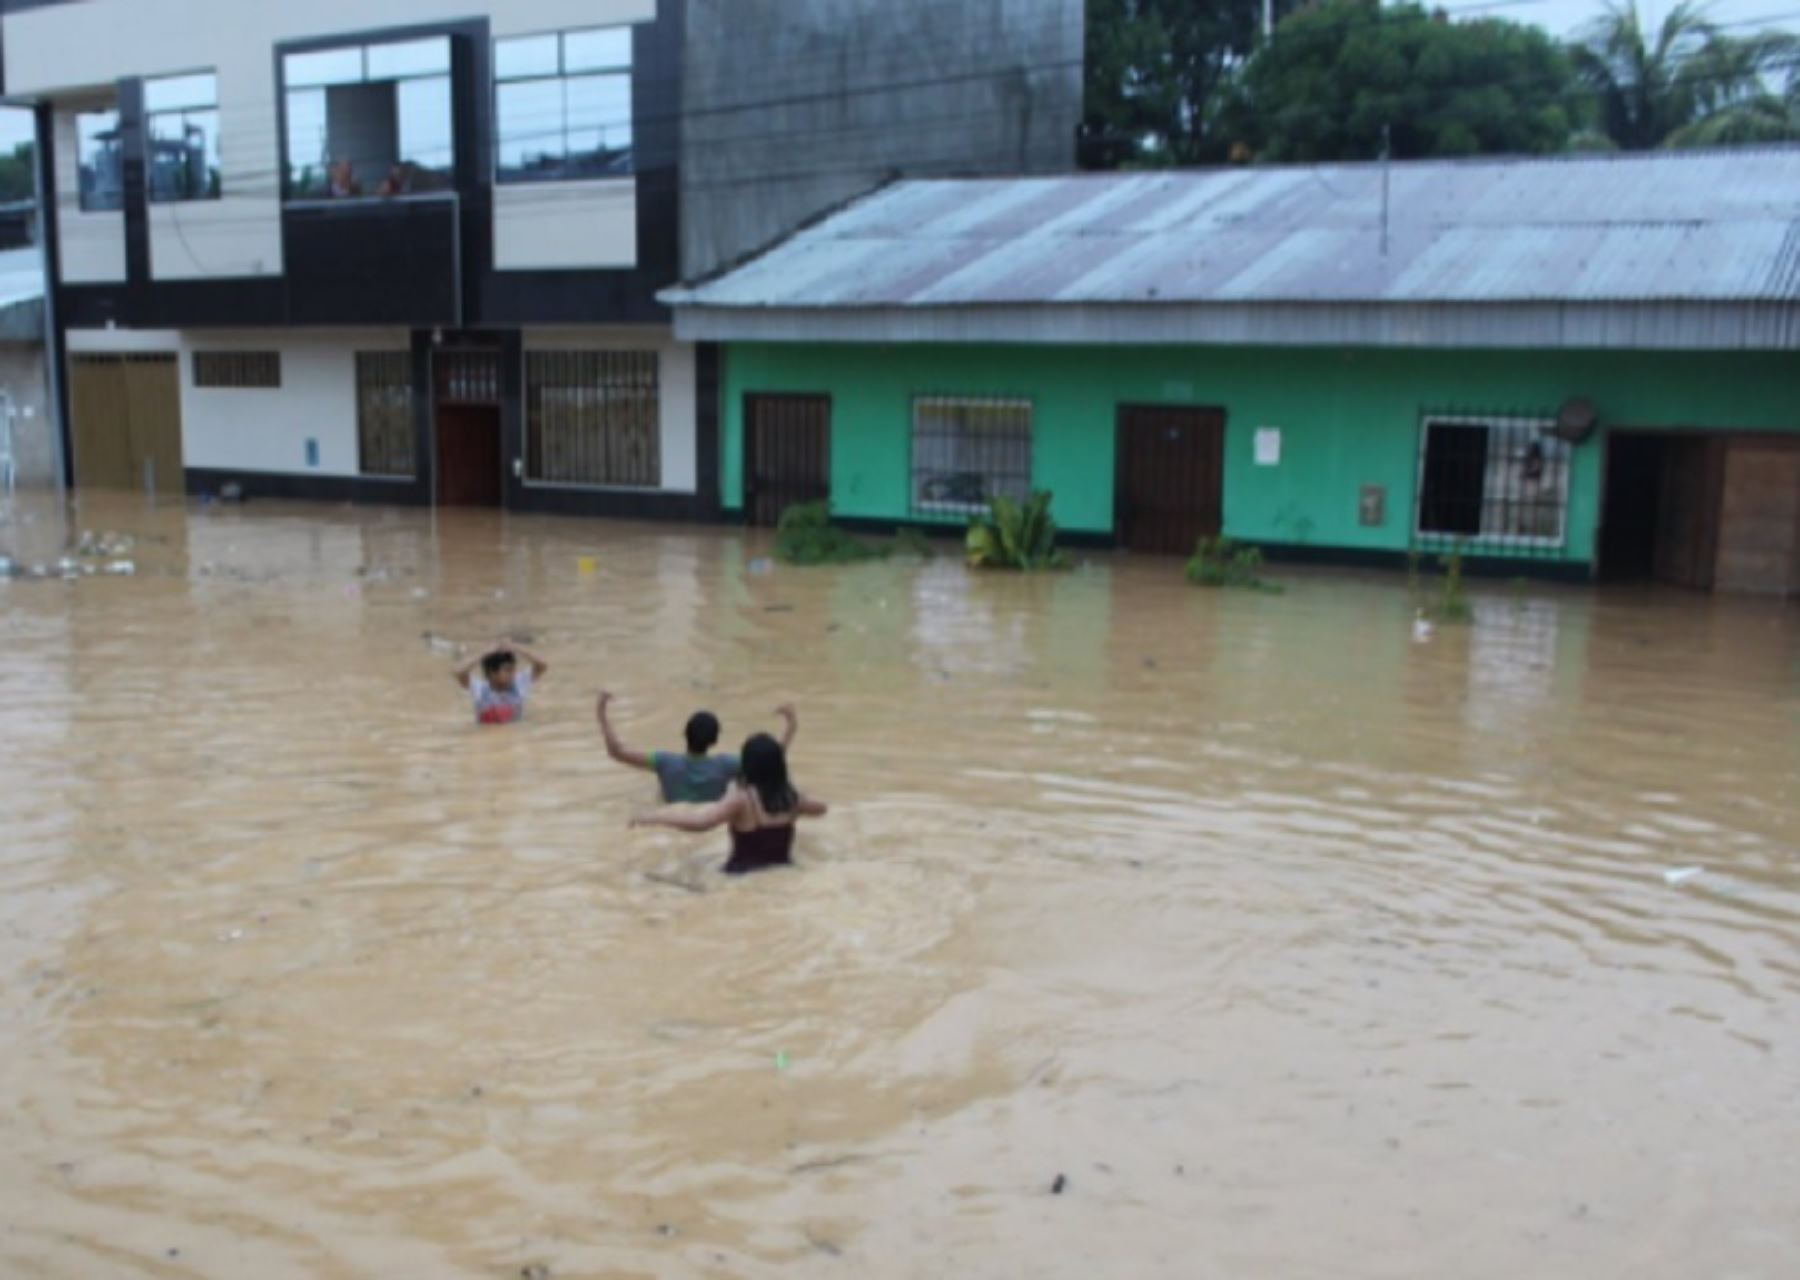 Más de 3,000 viviendas de siete barrios de la ciudad de Yurimaguas, capital de la provincia loretana de Alto Amazonas resultaron inundadas debido a una torrencial lluvia de casi tres horas que ocurrió esta madrugada, informó el alcalde Hugo Araujo Del Águila.